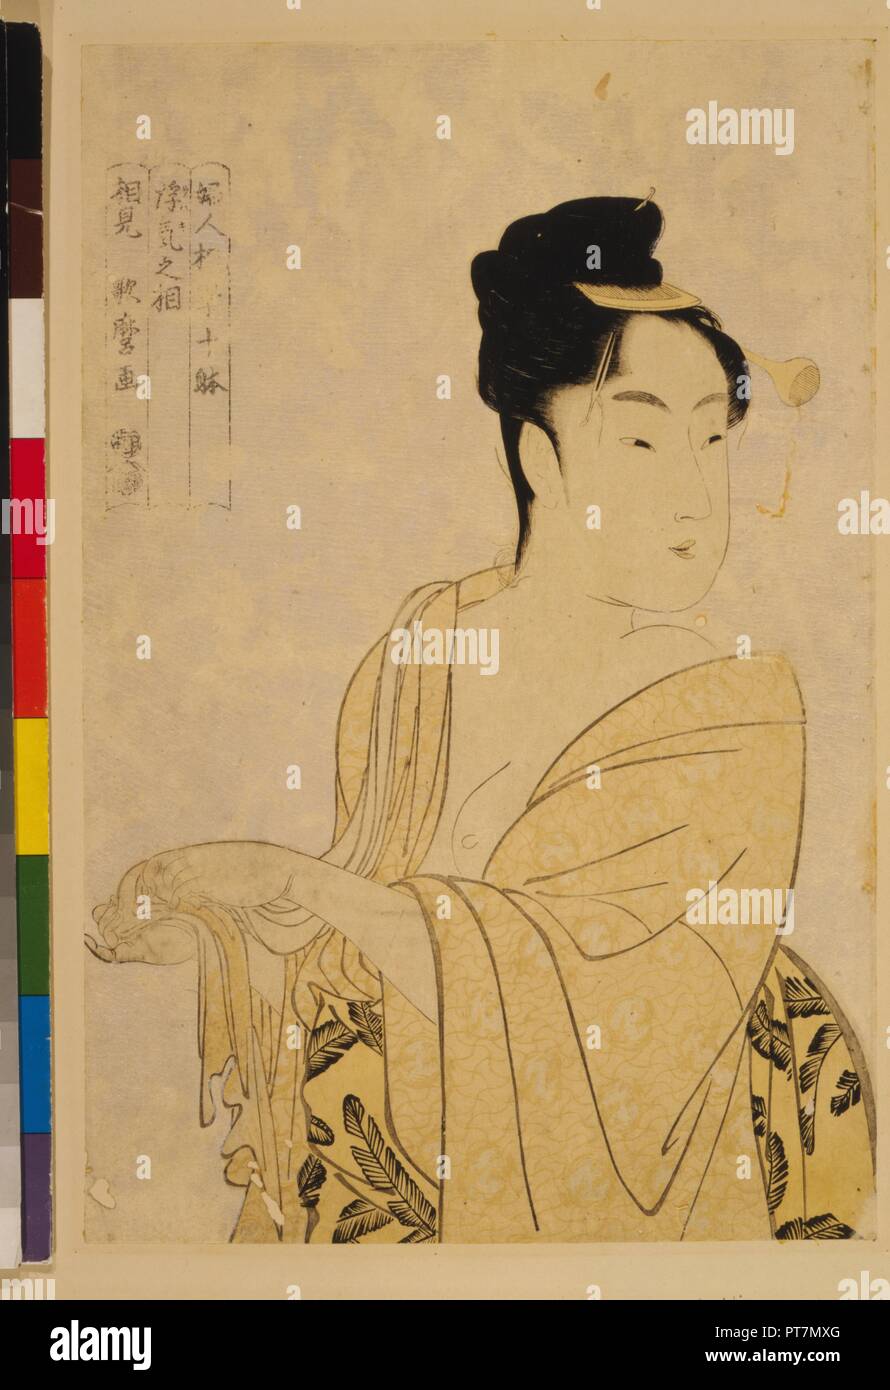 Le Fancy-Free Type, à partir de la série dix types physionomiques dans l'étude des femmes. Musée : collection privée. Auteur : Utamaro Kitagawa,. Banque D'Images